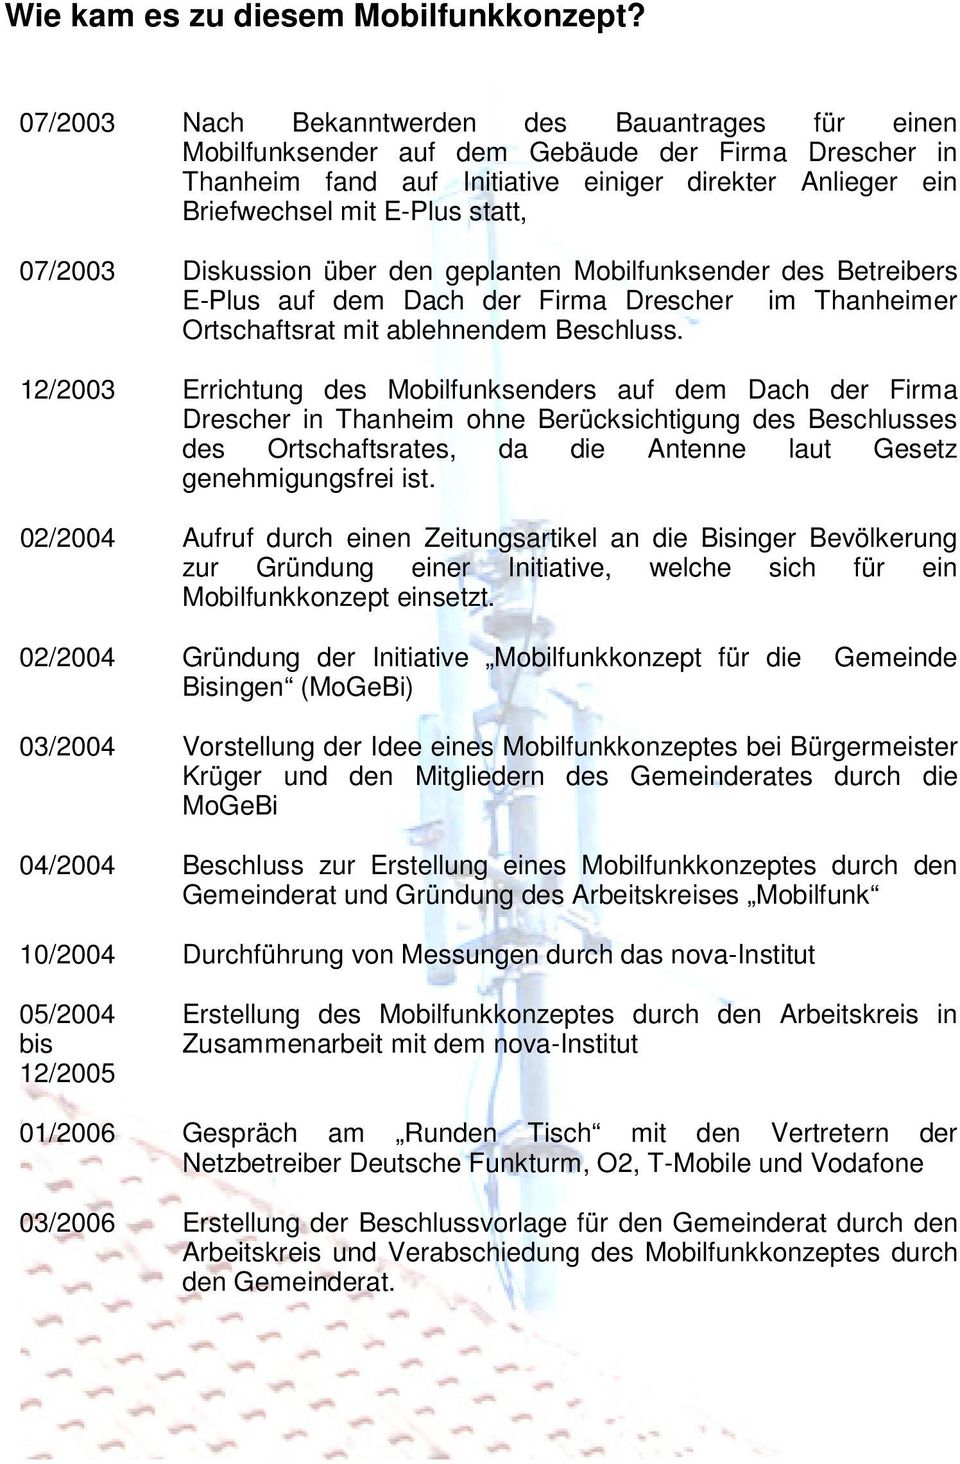 07/2003 Diskussion über den geplanten Mobilfunksender des Betreibers E-Plus auf dem Dach der Firma Drescher im Thanheimer Ortschaftsrat mit ablehnendem Beschluss.